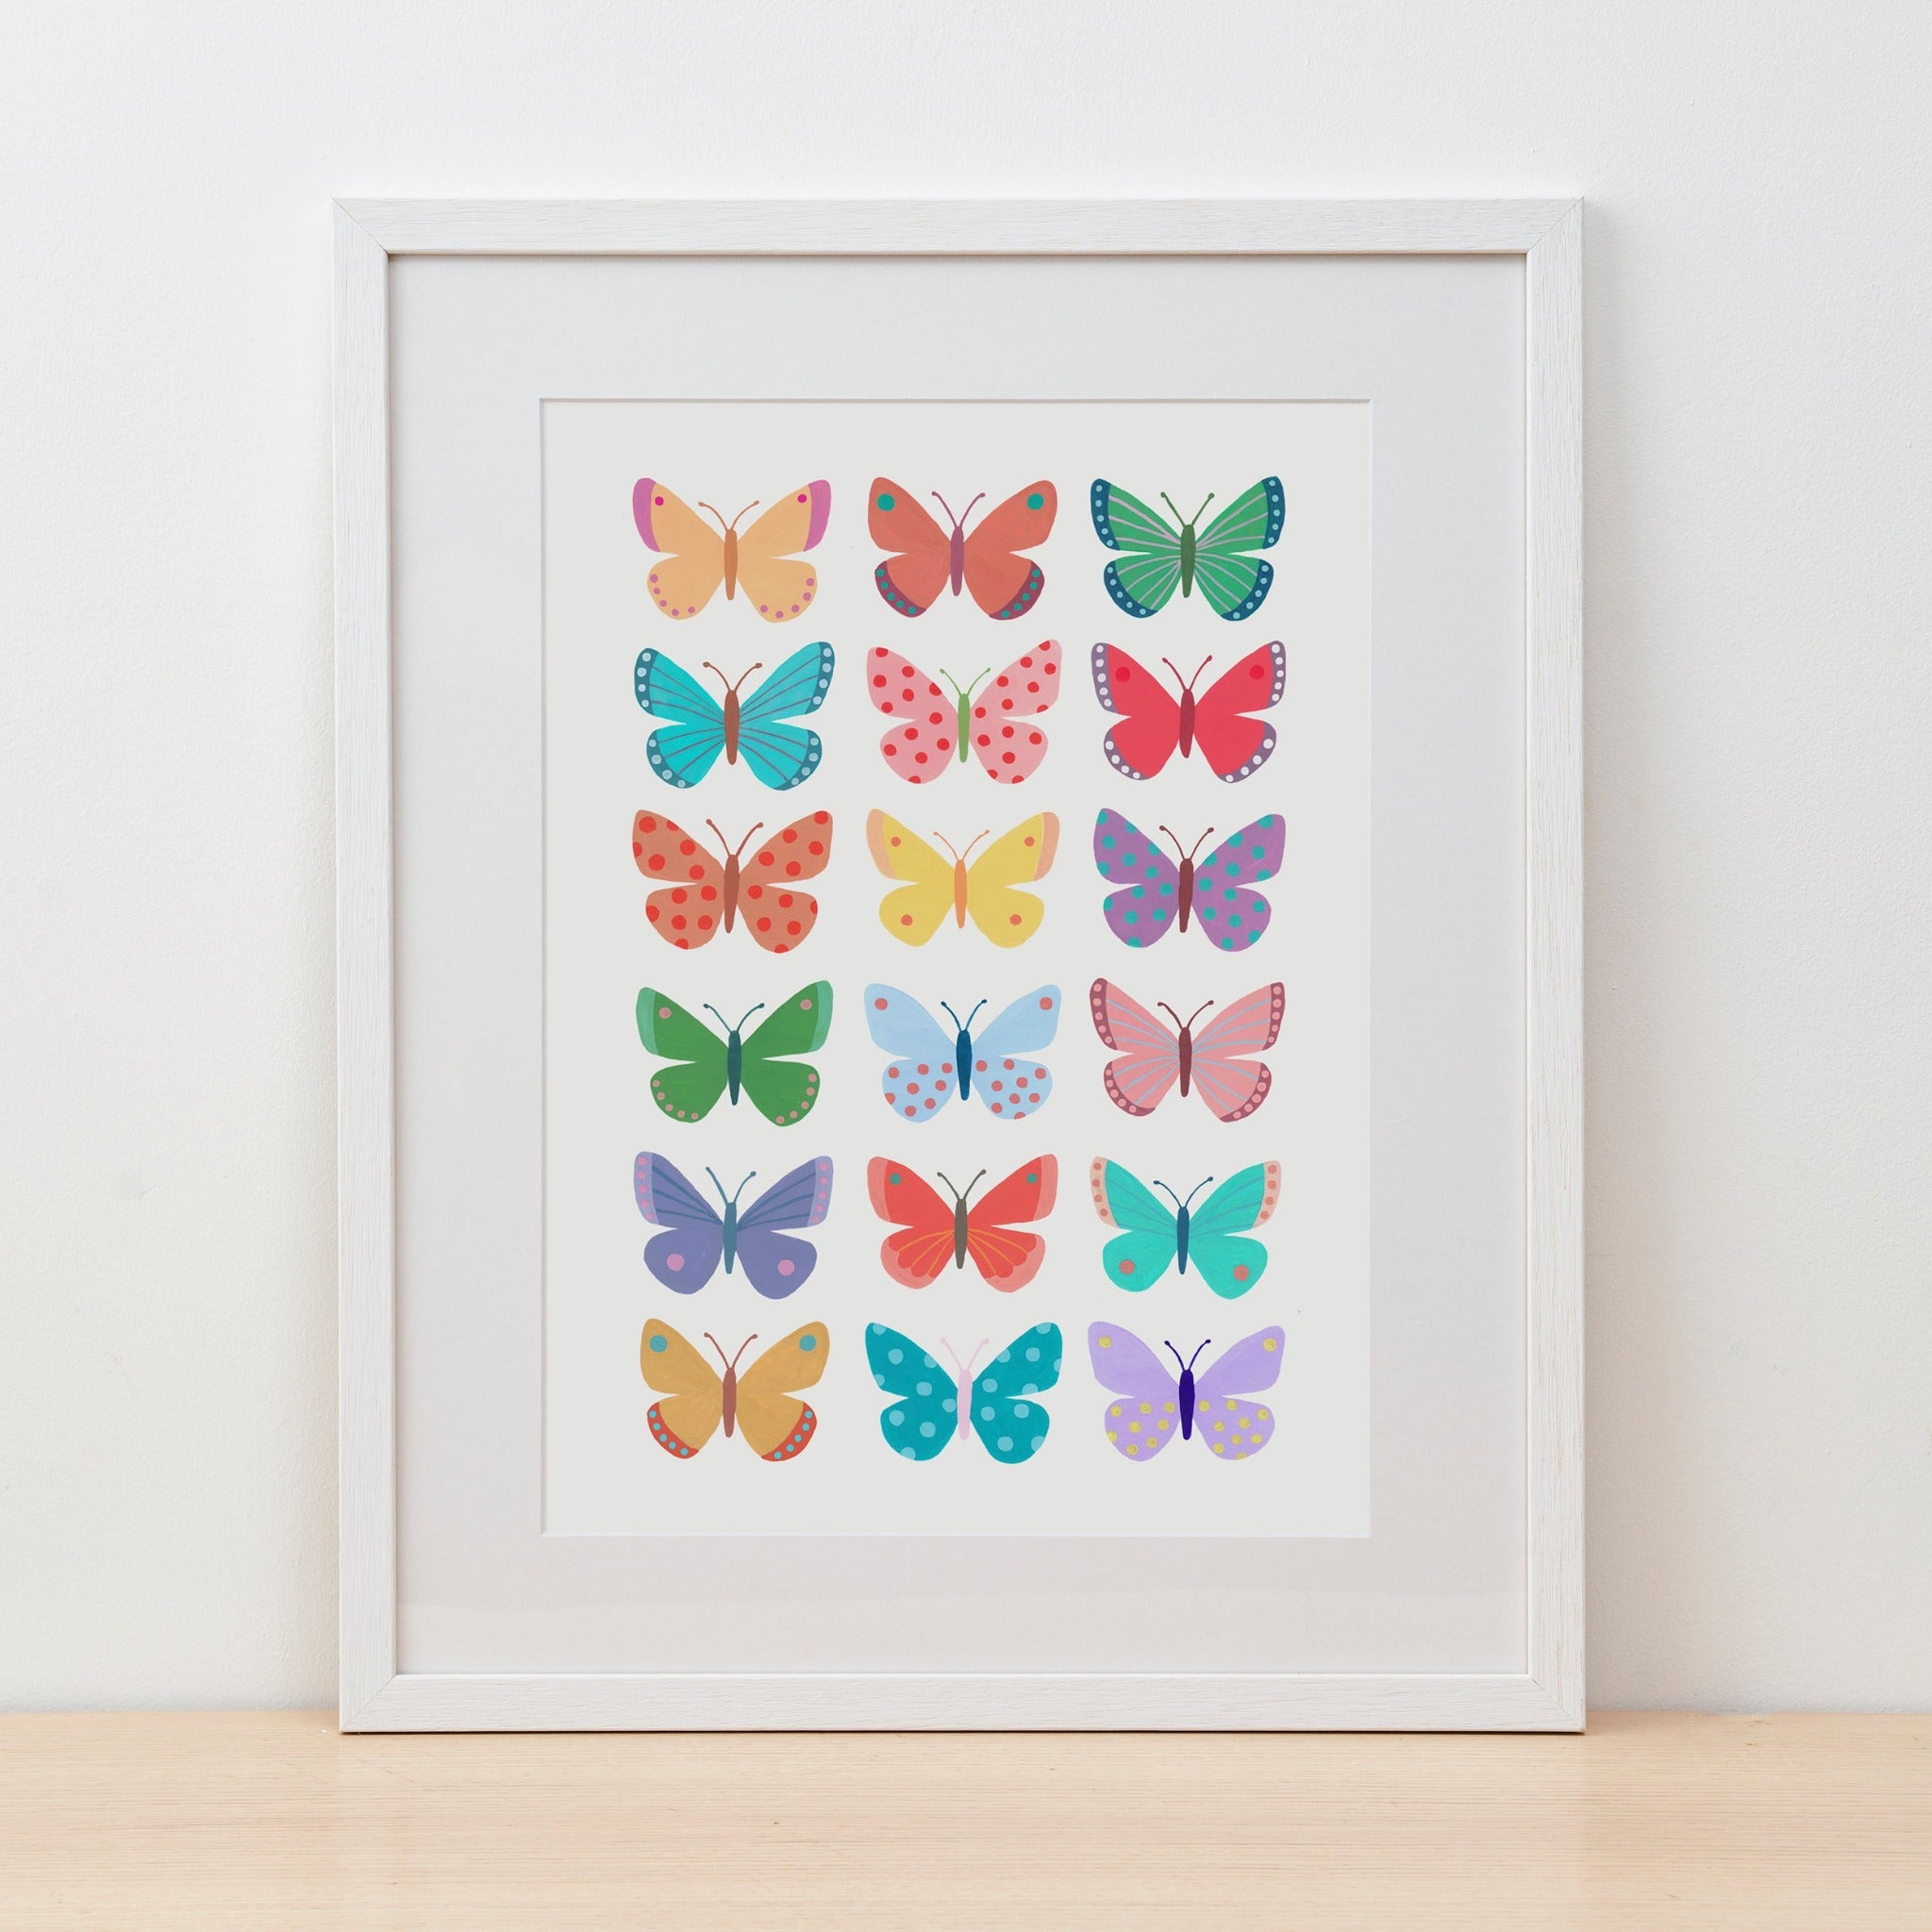 Butterfly Fine Art Print by Mary Kilvert